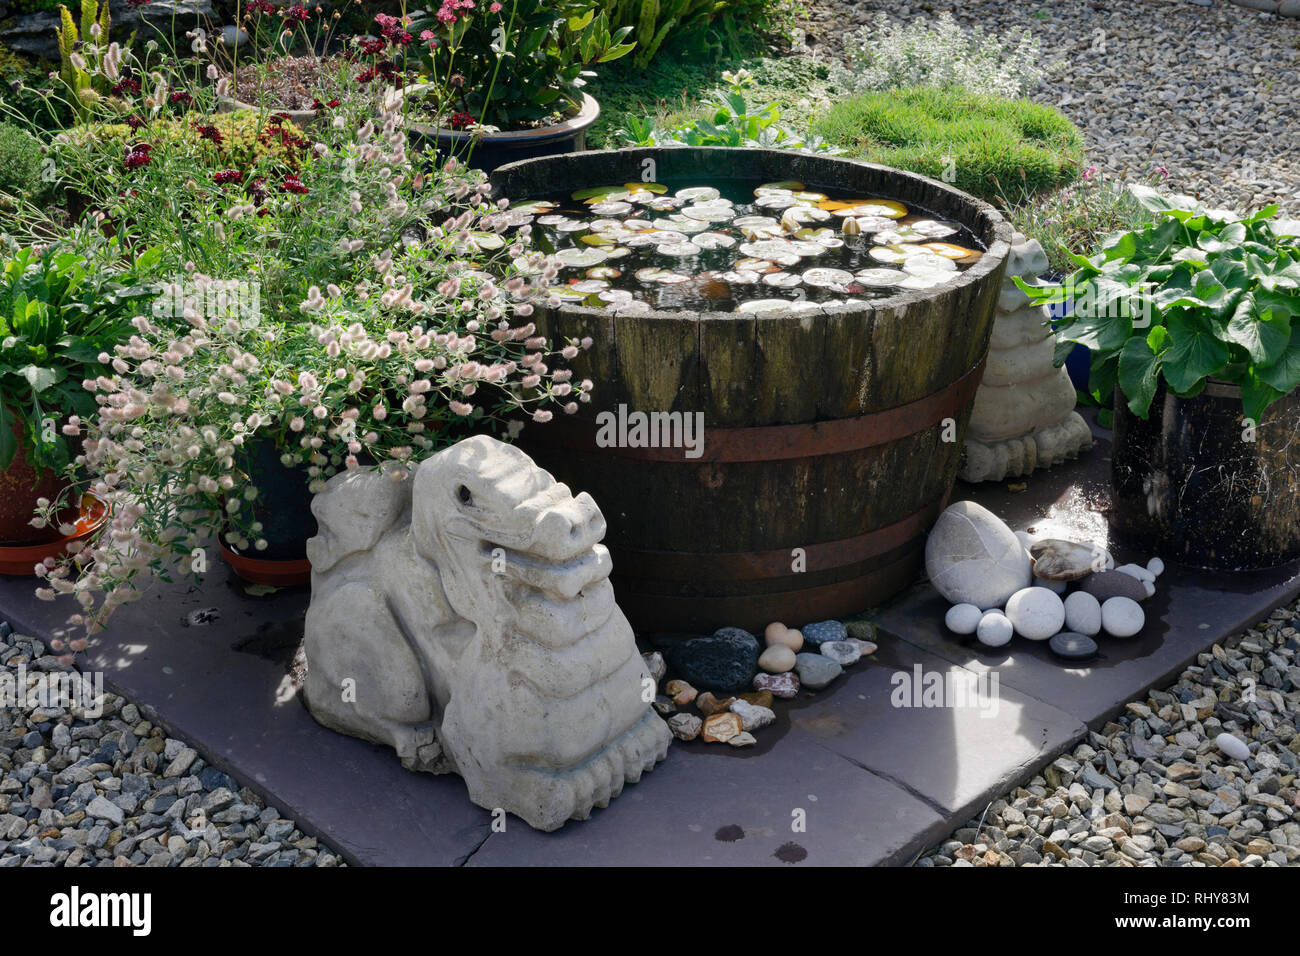 Jardín central un pequeño estanque de lirios creado en medio barril de whiskey, rodeado de plantas en macetas y casera dragon esculturas de hormigón. Foto de stock